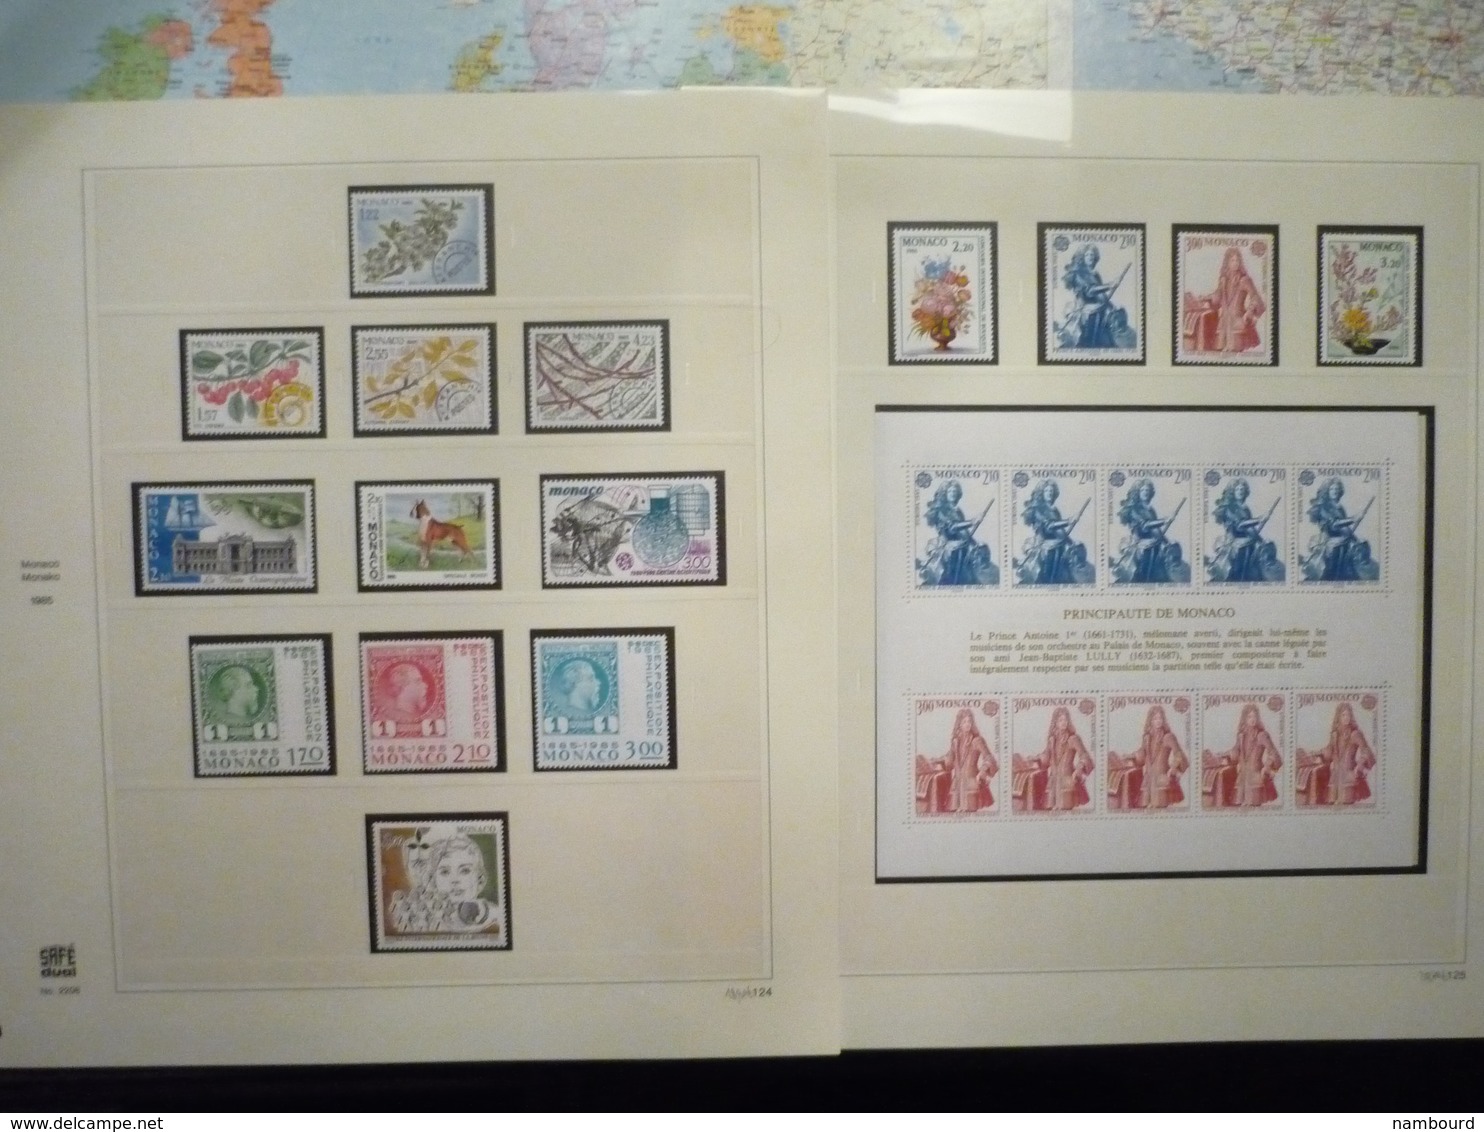 Collection de timbres de Monaco neufs sans charnières dans Album SAFE de 1979 à 1986